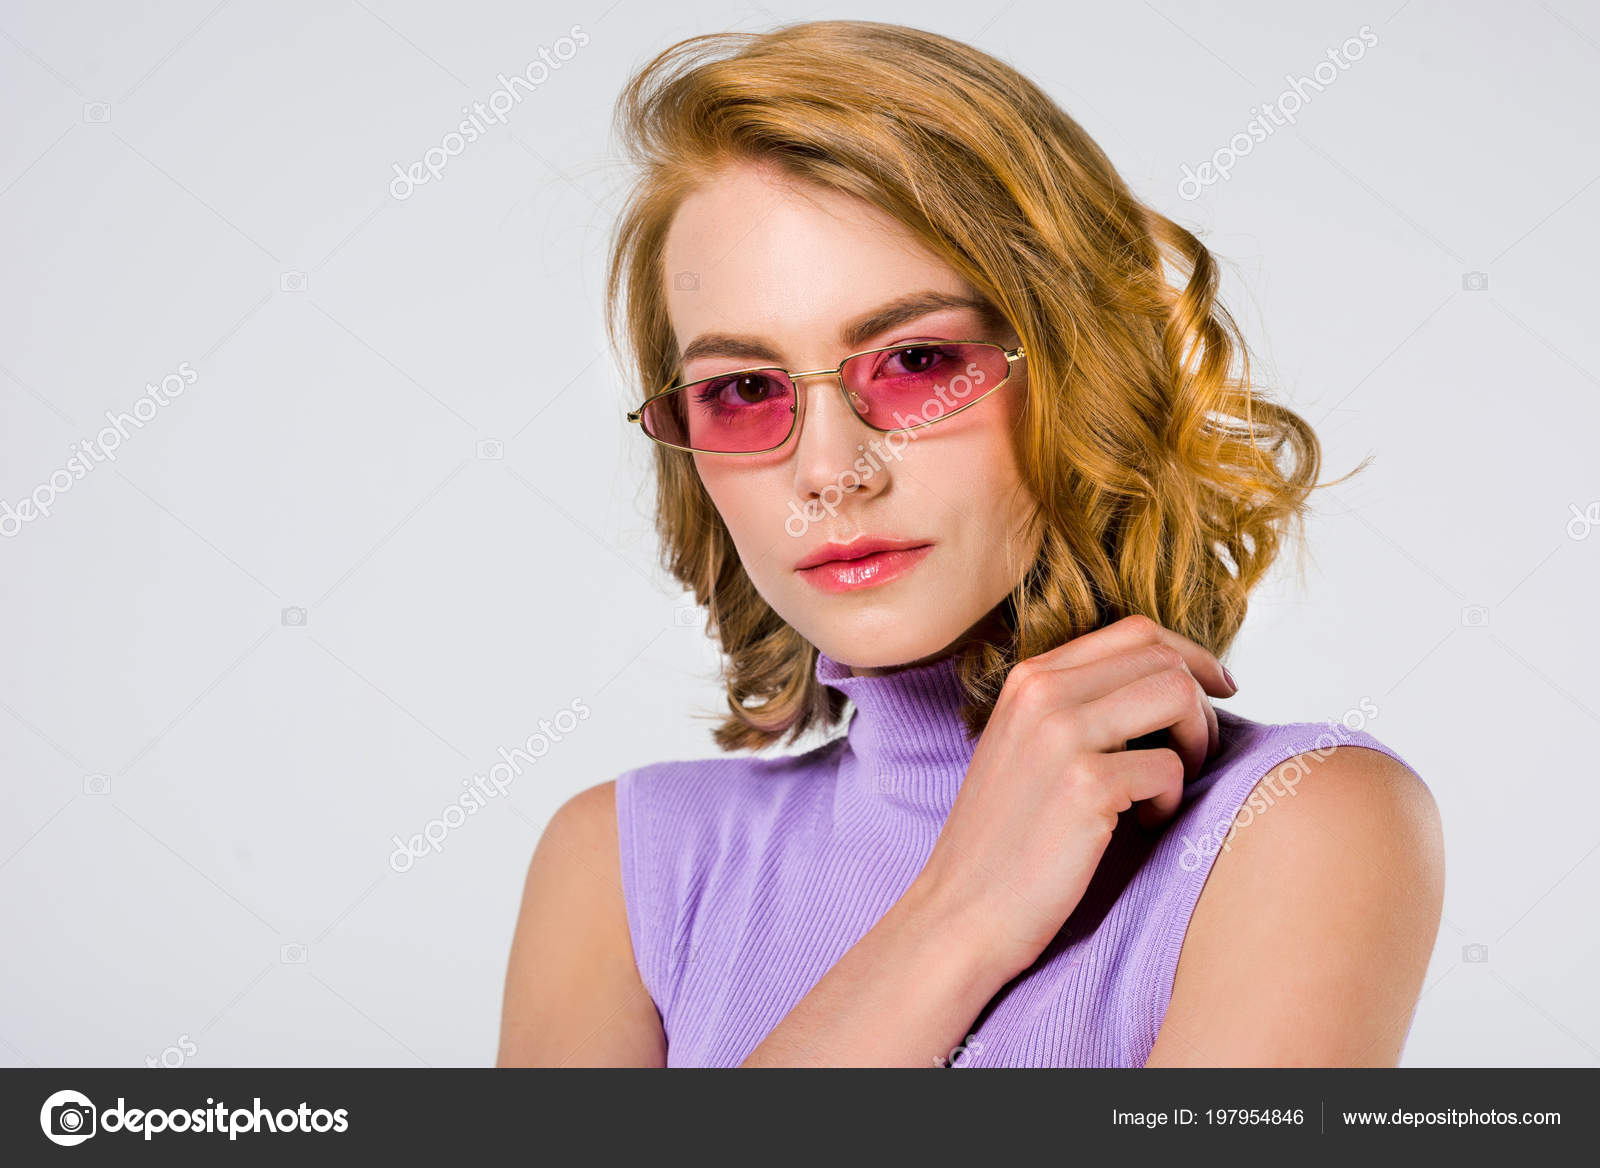 https://st4.depositphotos.com/12985790/19795/i/1600/depositphotos_197954846-stock-photo-portrait-beautiful-young-woman-pink.jpg